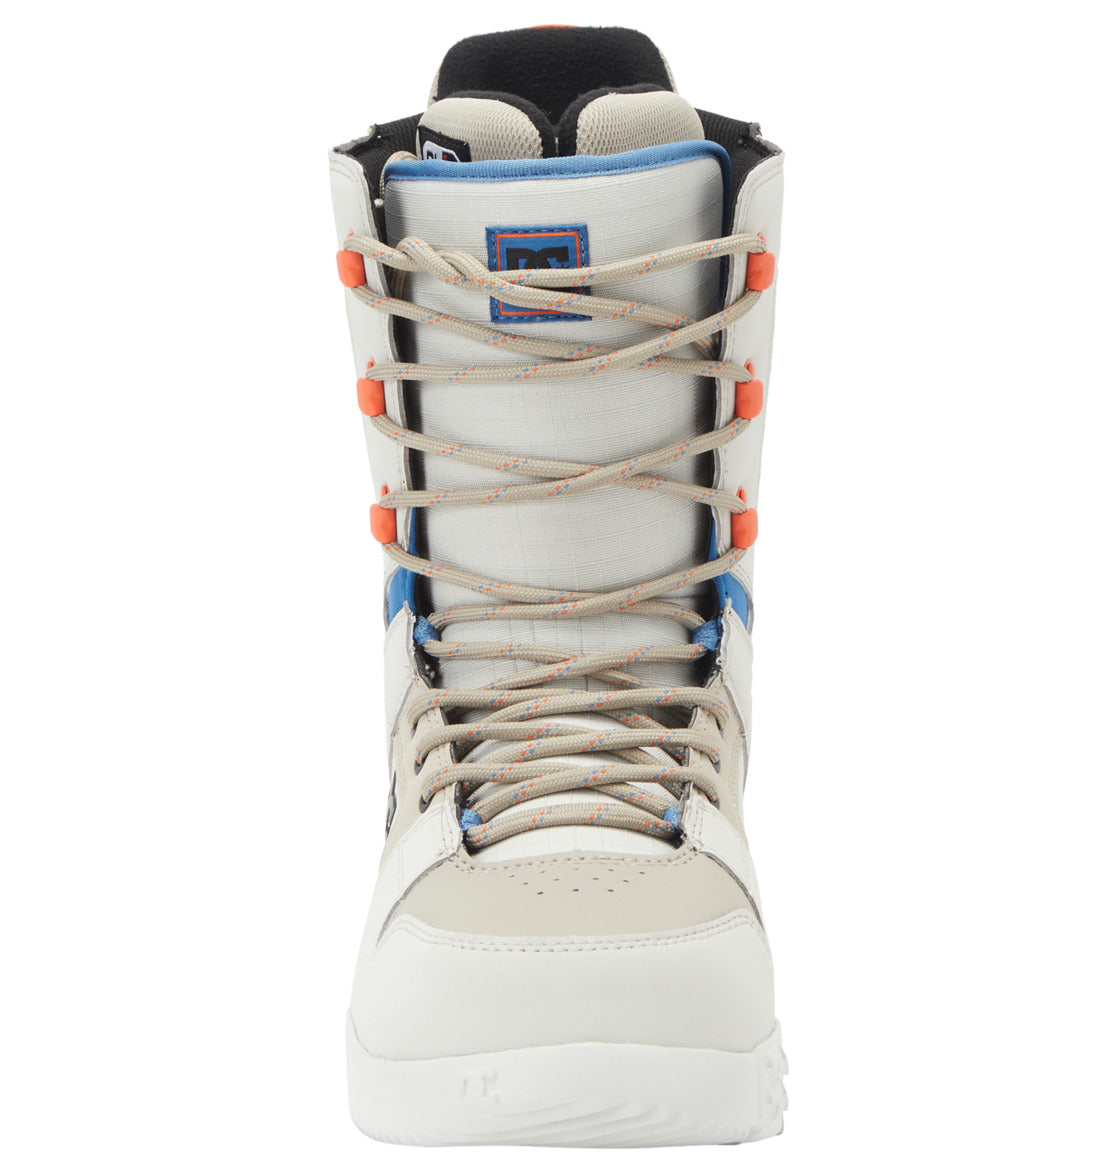 bottes-snow-homme-phase-light-lace-dc-shoes-MEN-SNOW-BOOTS-SALES-DM2_SHOP-05